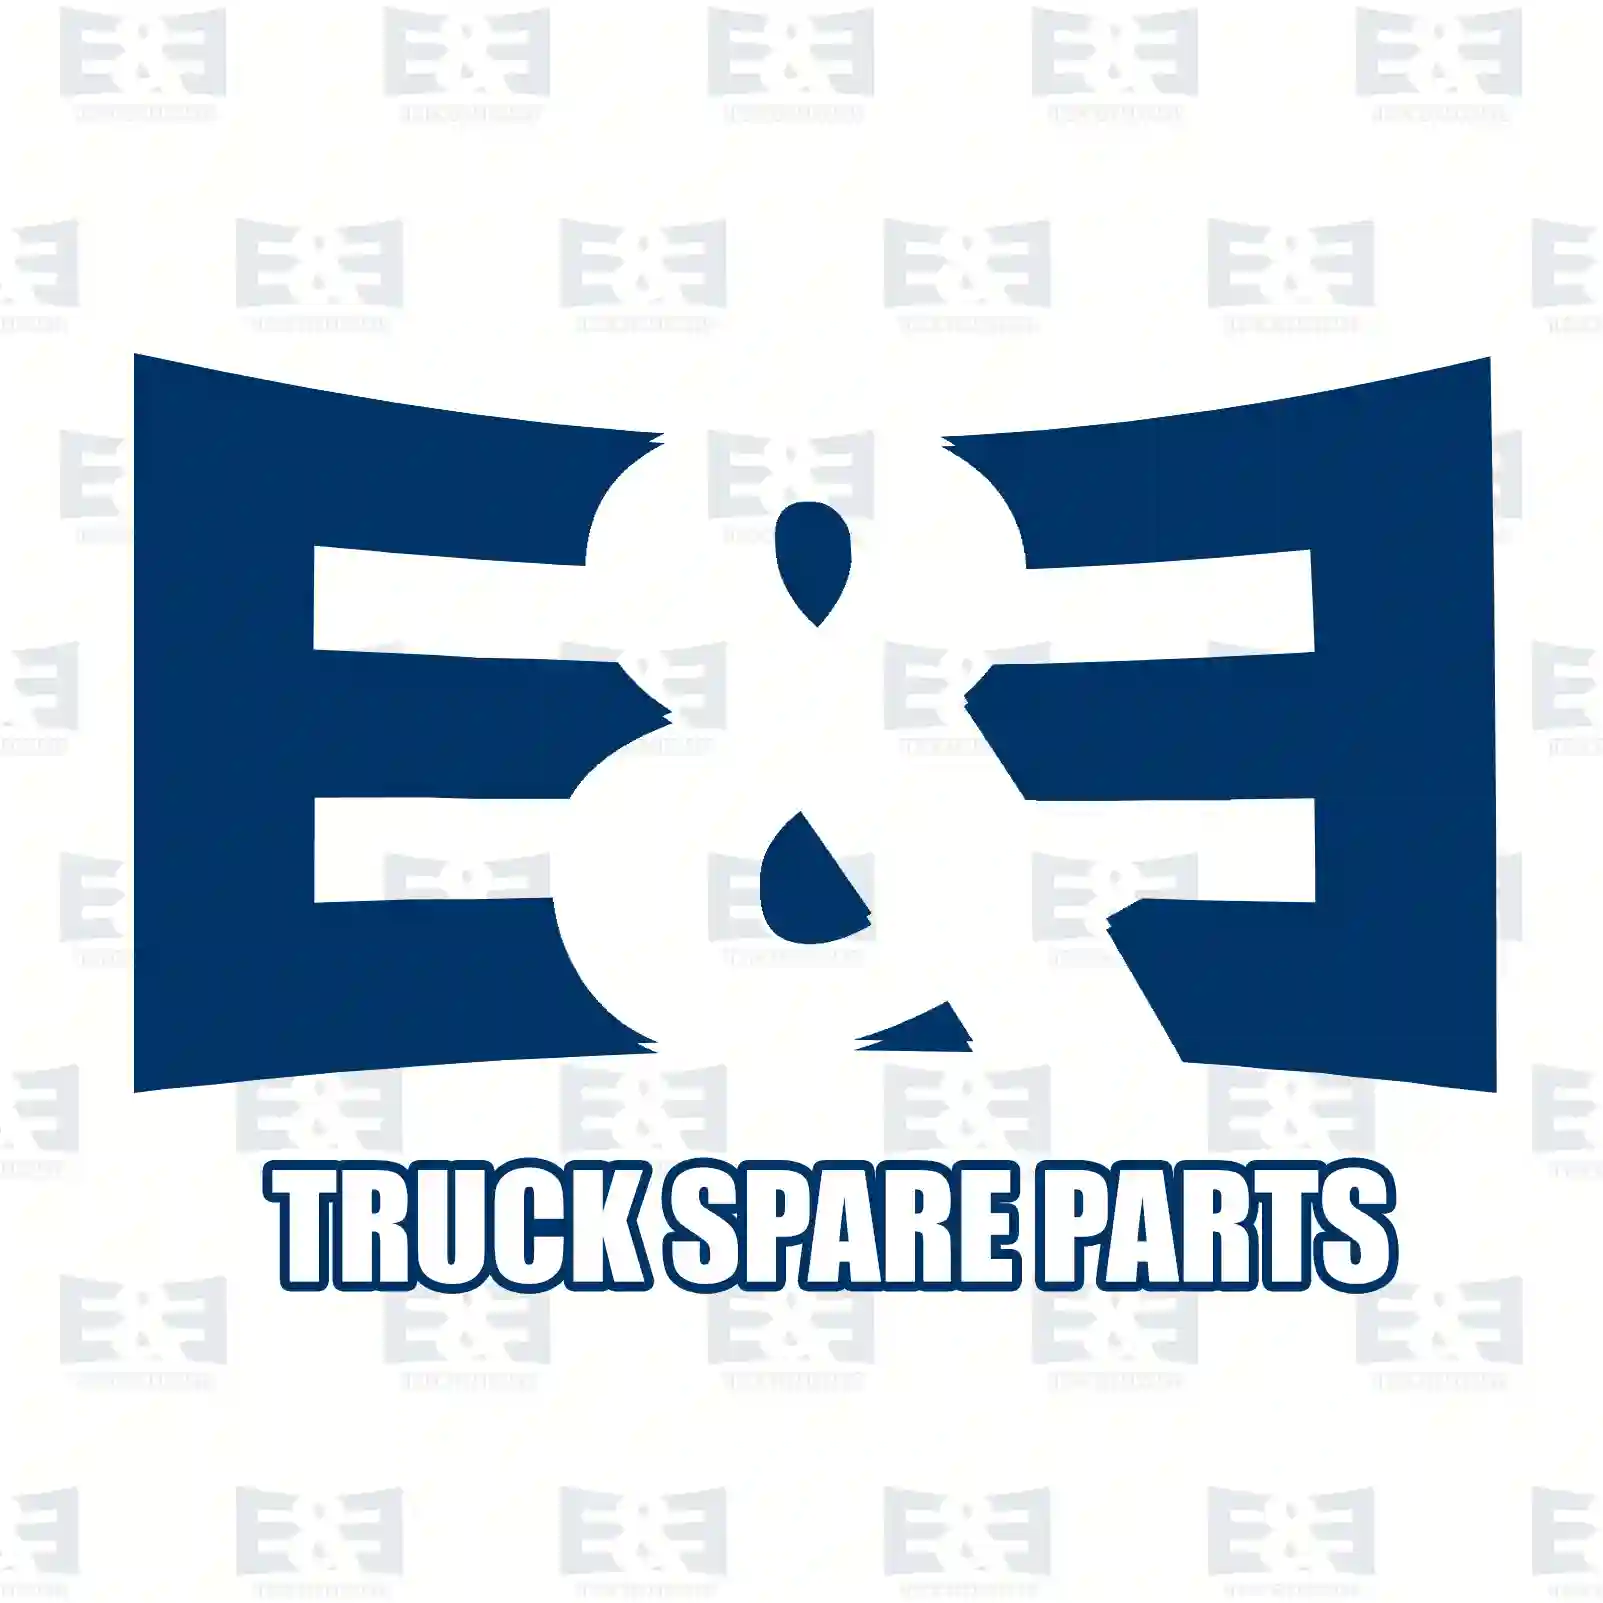 Brake drum, 2E2293995, 07173281, 7173281, , , , , ||  2E2293995 E&E Truck Spare Parts | Truck Spare Parts, Auotomotive Spare Parts Brake drum, 2E2293995, 07173281, 7173281, , , , , ||  2E2293995 E&E Truck Spare Parts | Truck Spare Parts, Auotomotive Spare Parts